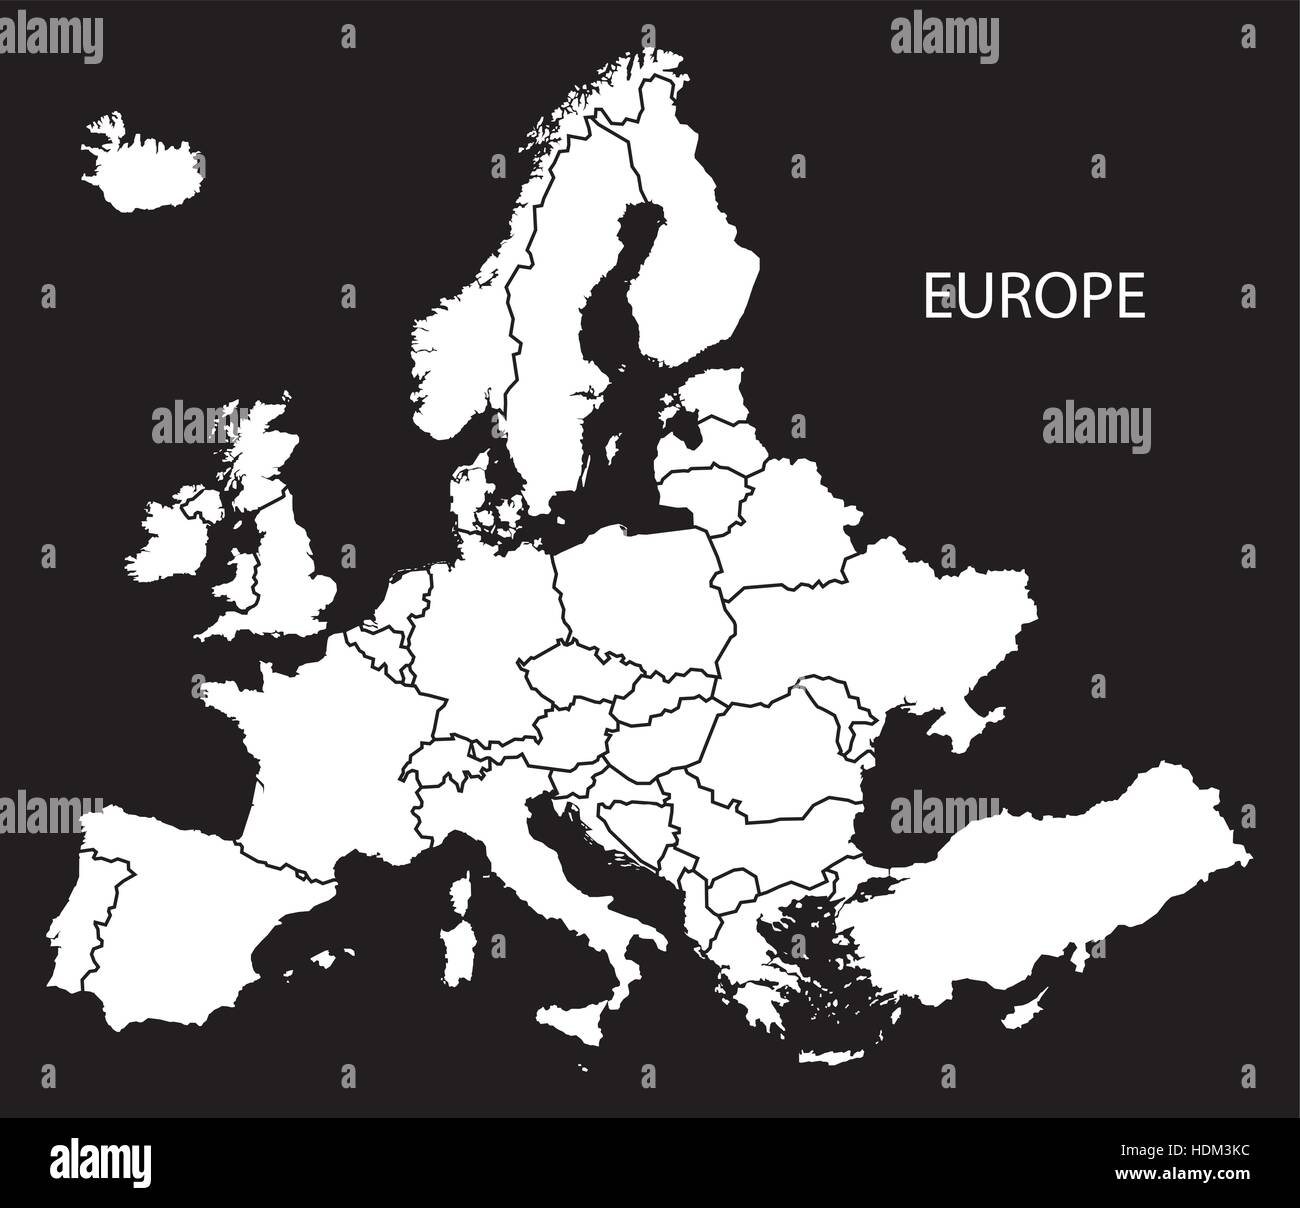 Europa mit Länder-Karte schwarz-weiß-Abbildung Stock-Vektorgrafik - Alamy